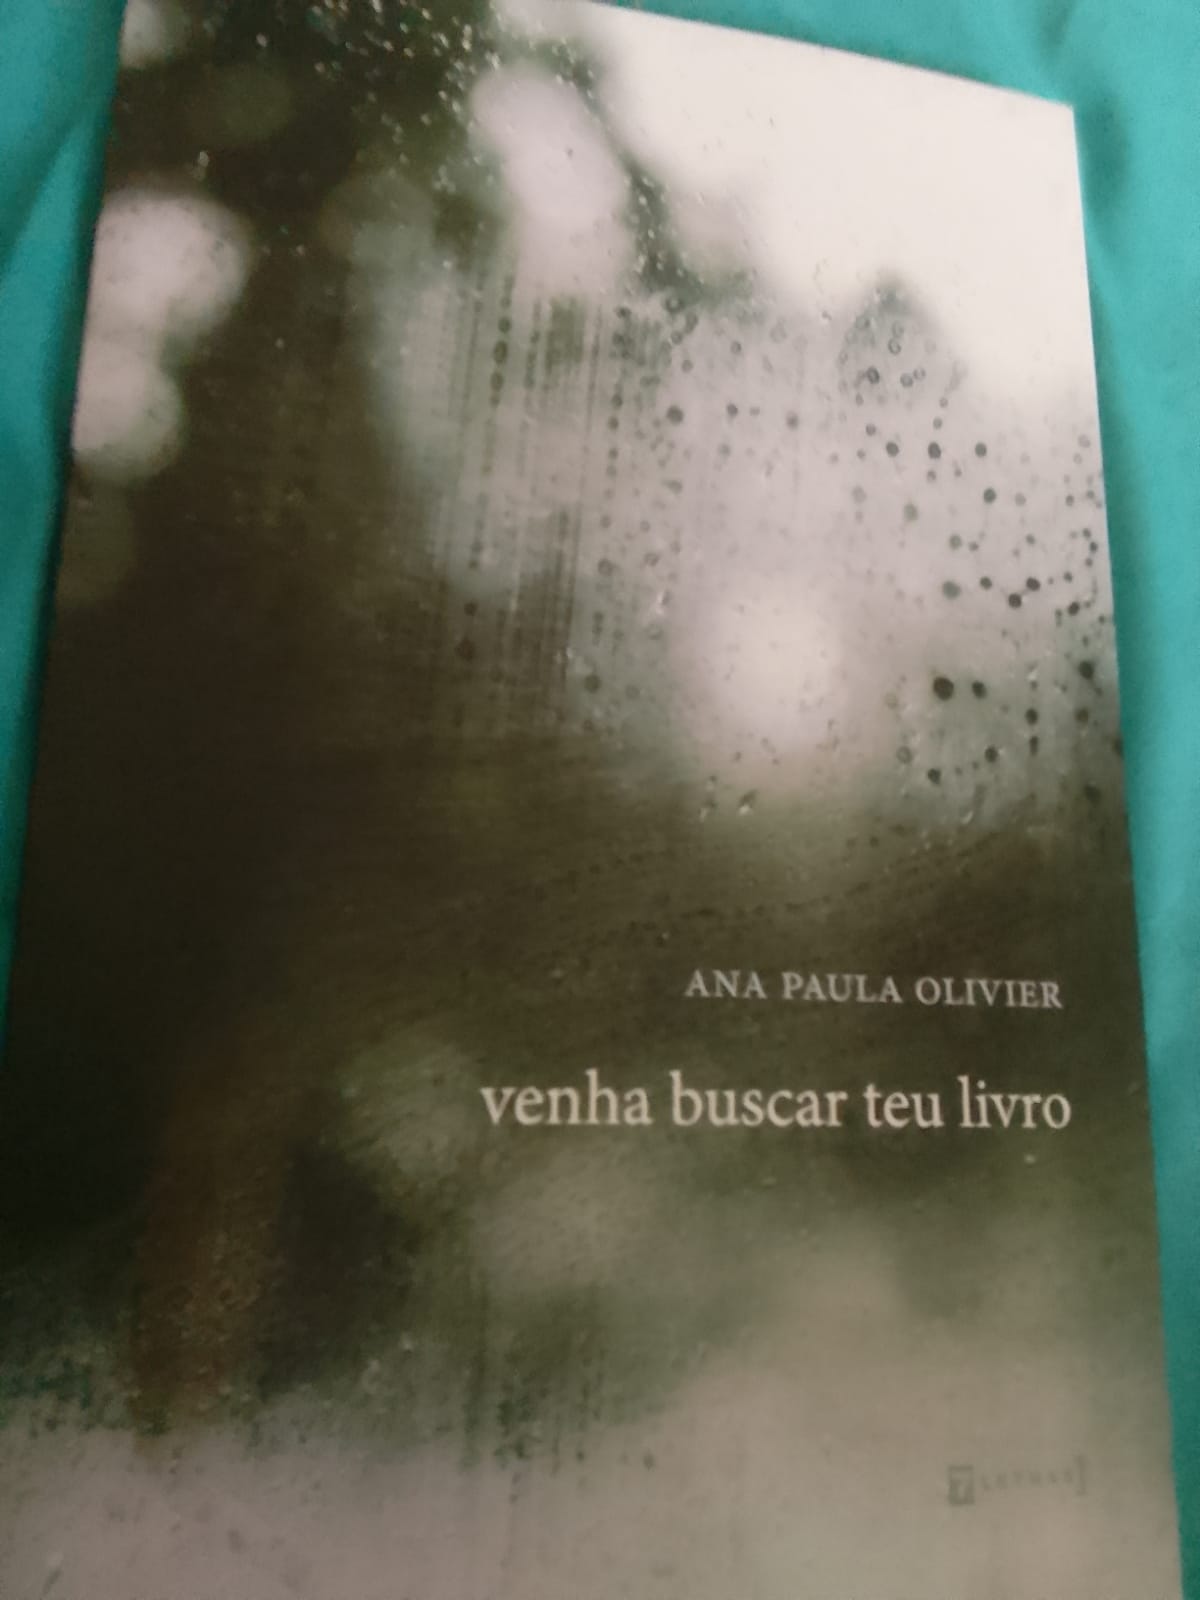 Ana Paula Olivier - Livro de poemas 'Venha buscar seu livro' faz do objeto livro a sublimação da perda e da dor